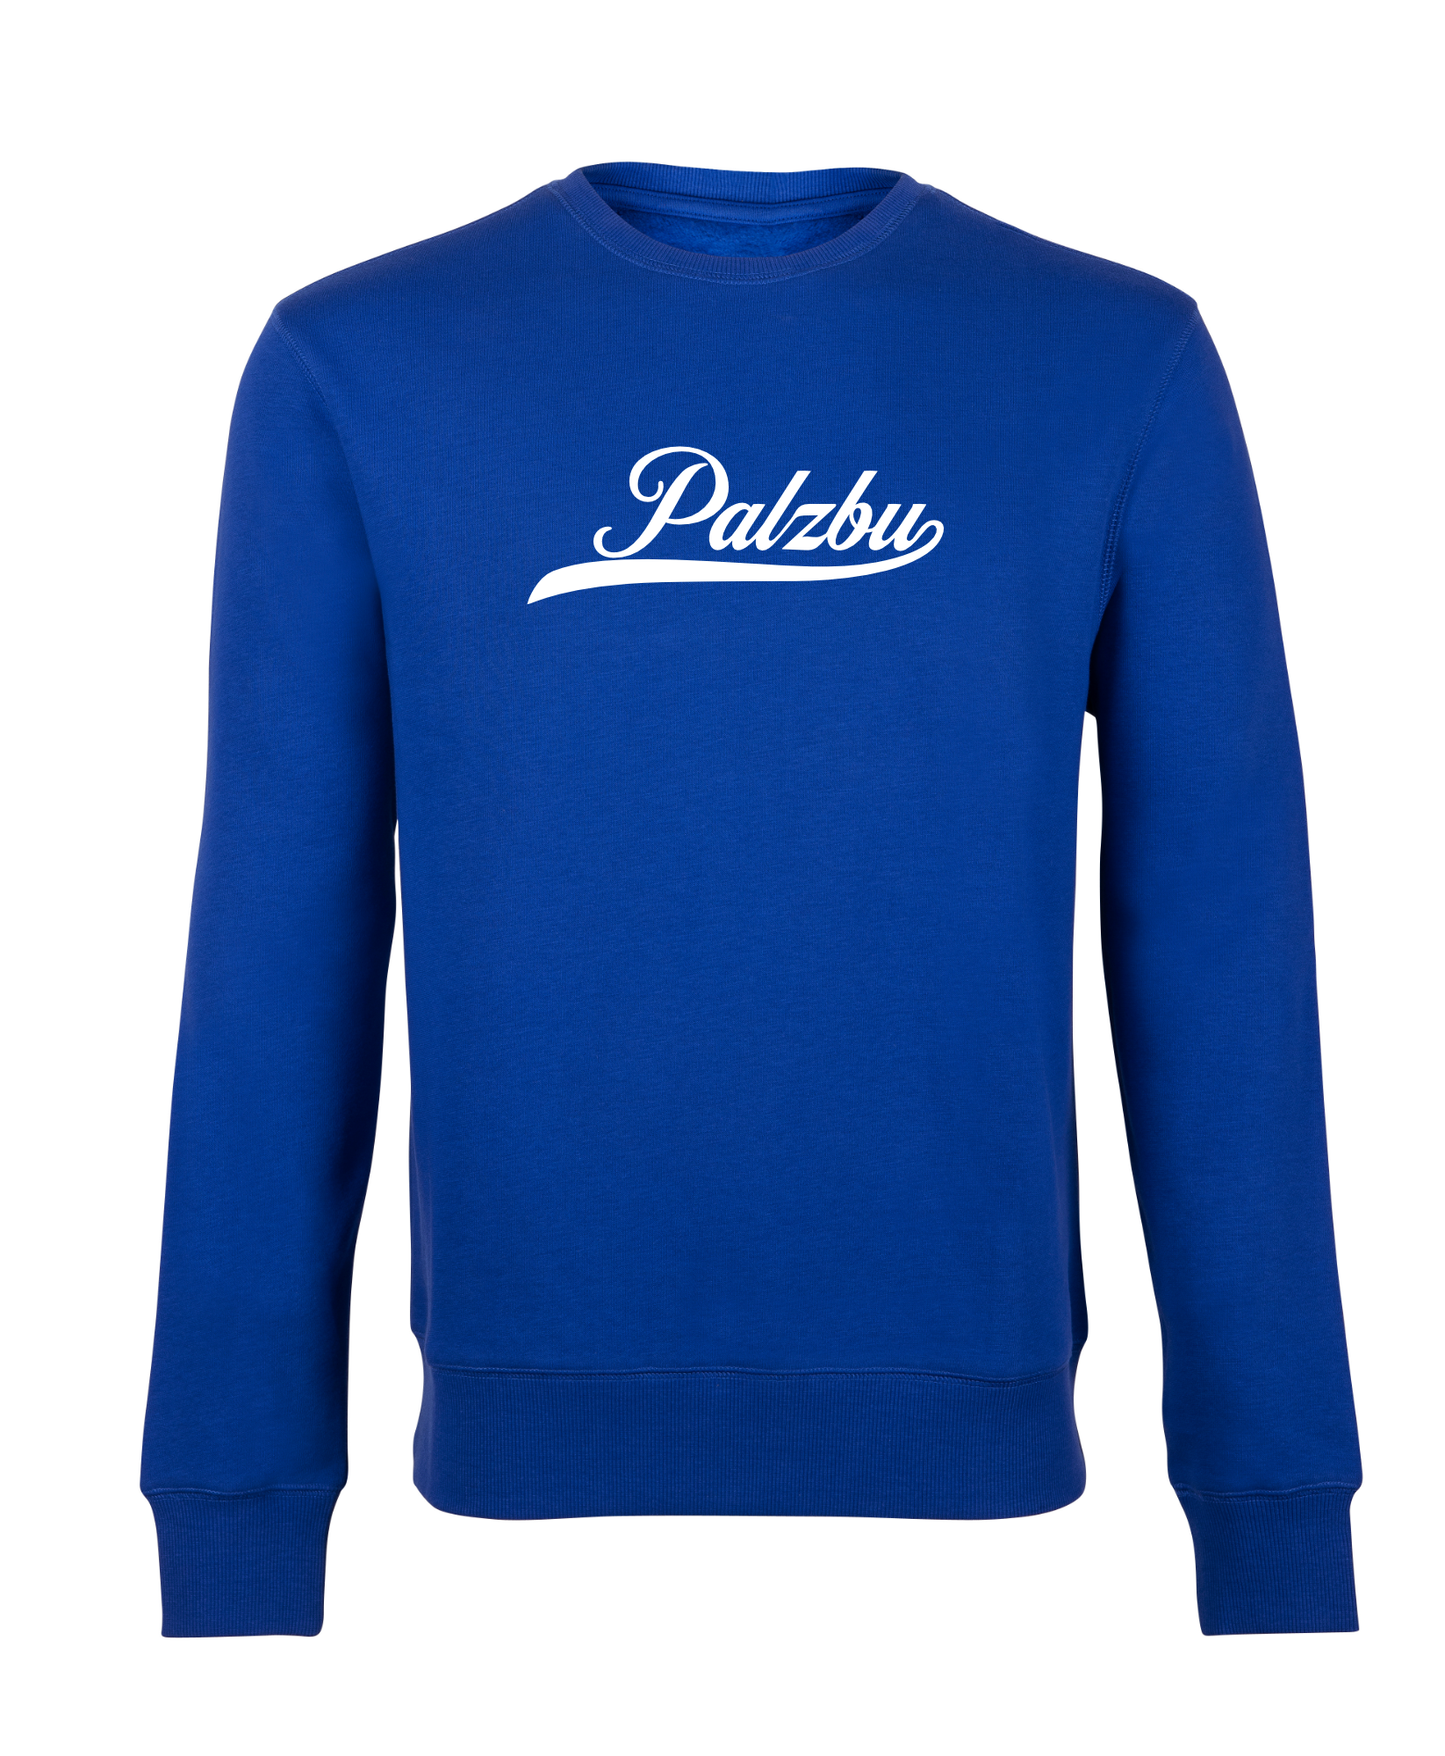 Palzbu pREHmium - Sweatshirts